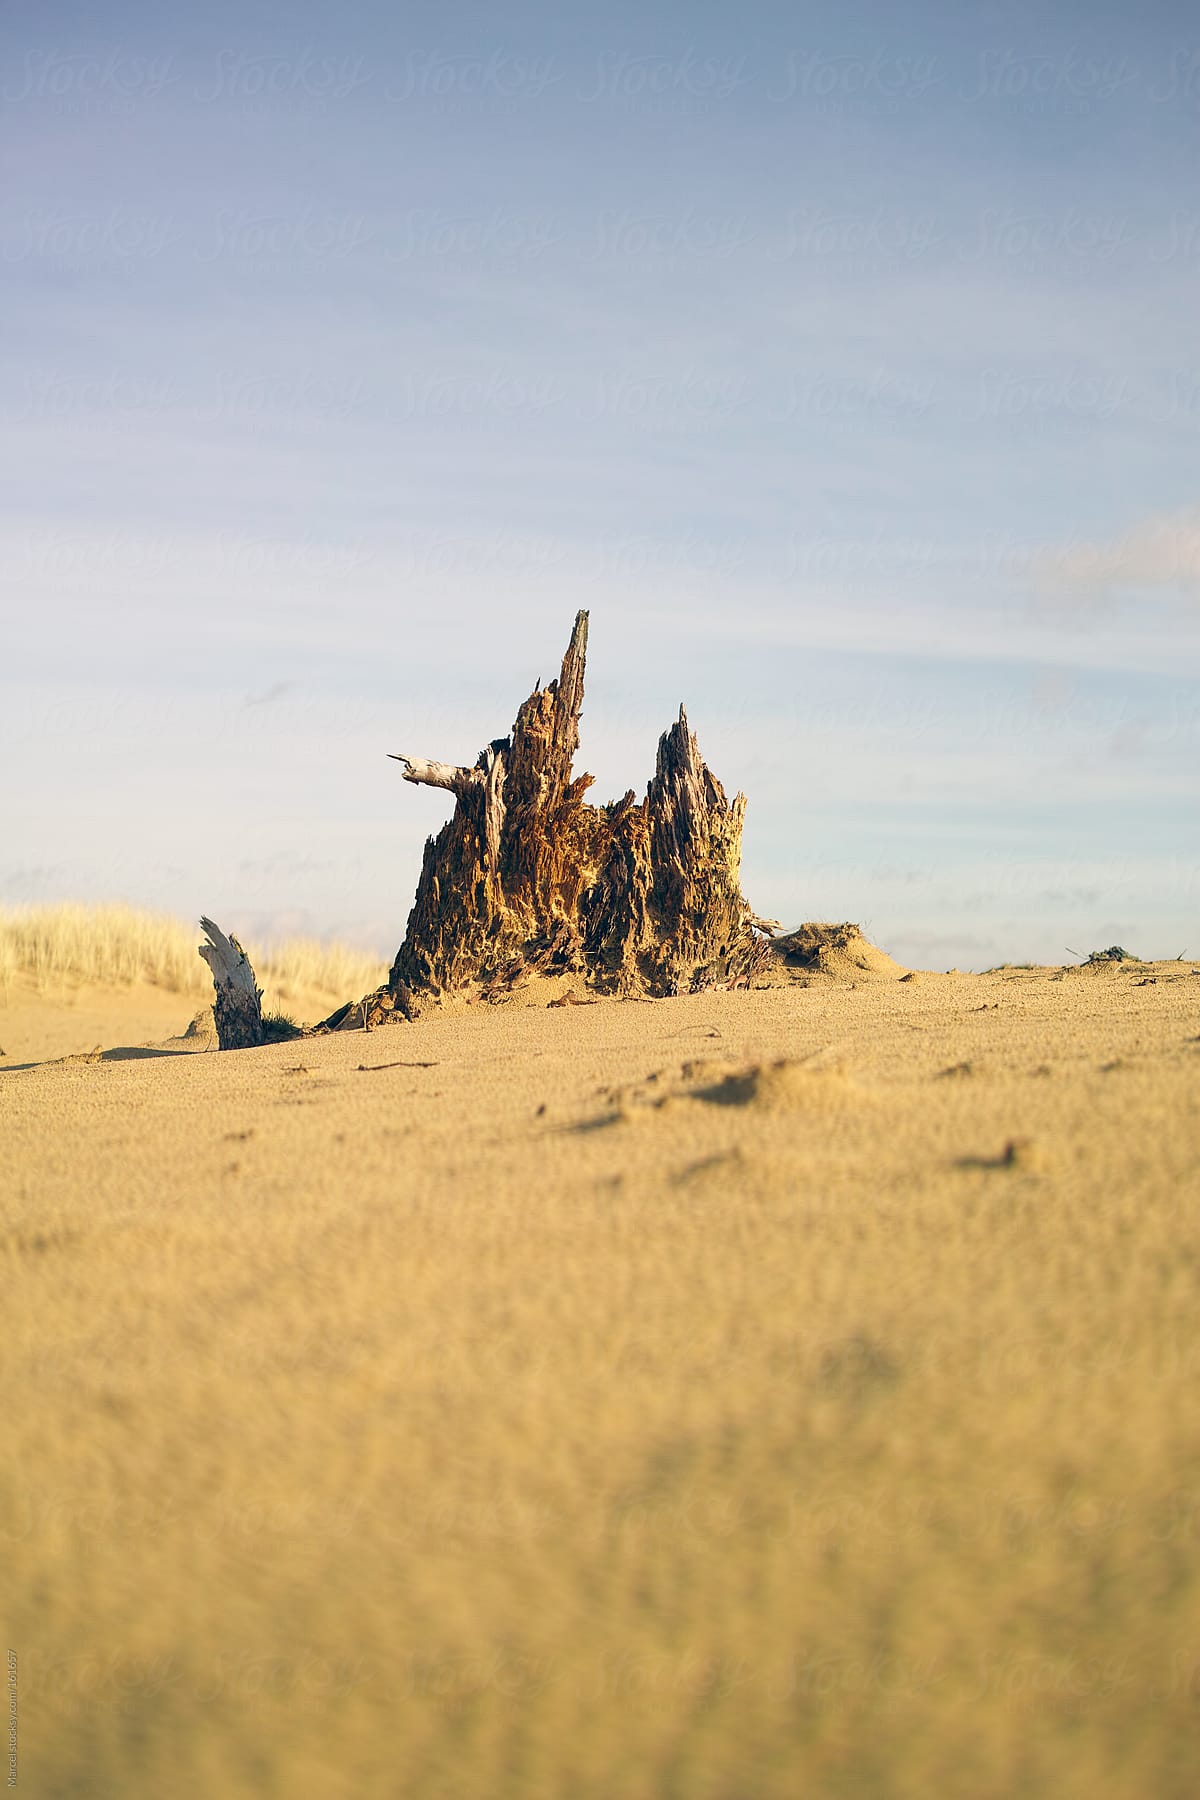 Tree stump in desertlike landscape